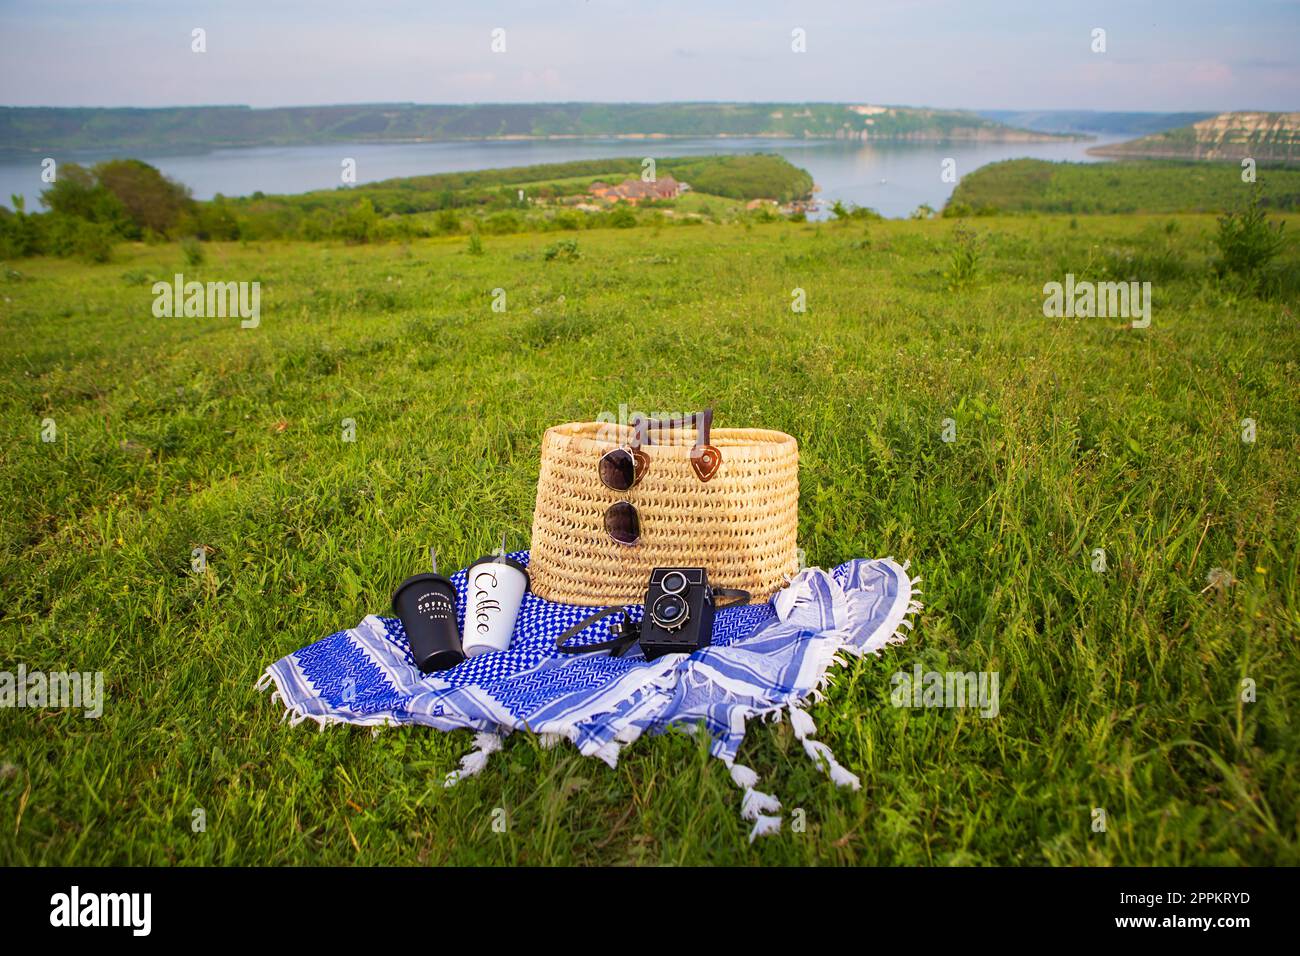 Eine sehr schöne Aussicht auf den See. Ein Strohkorb steht auf einer blauen Decke auf grünem Gras zusammen mit Gläsern, einer Kamera und Kaffeetassen. Erholung im Freien. Stockfoto